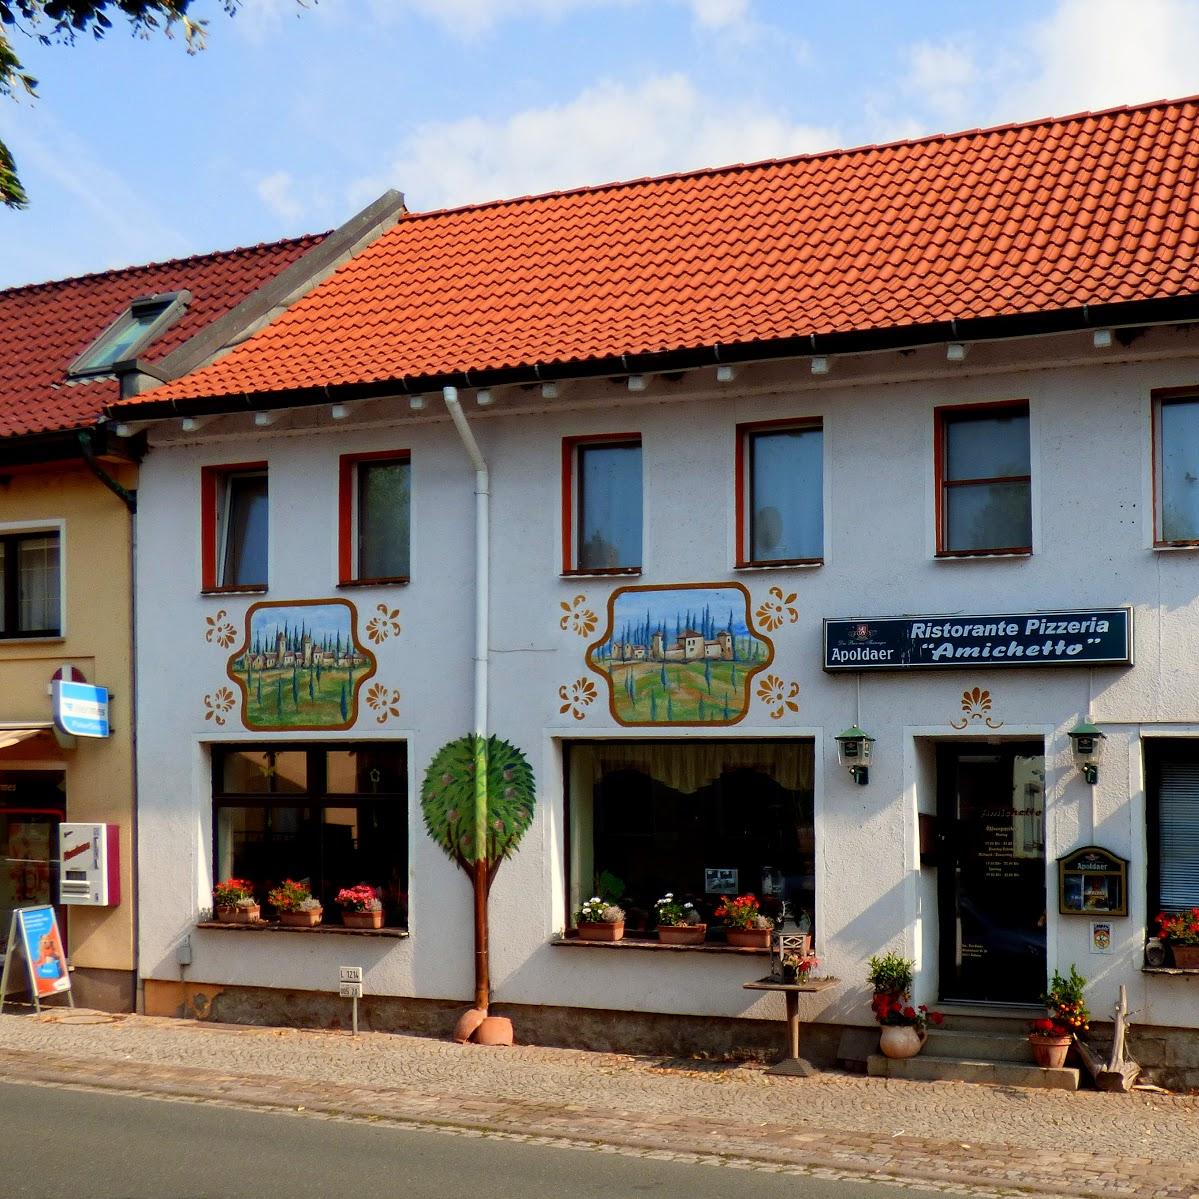 Restaurant "Ristorante Pizzeria Amichetto" in Roßleben-Wiehe